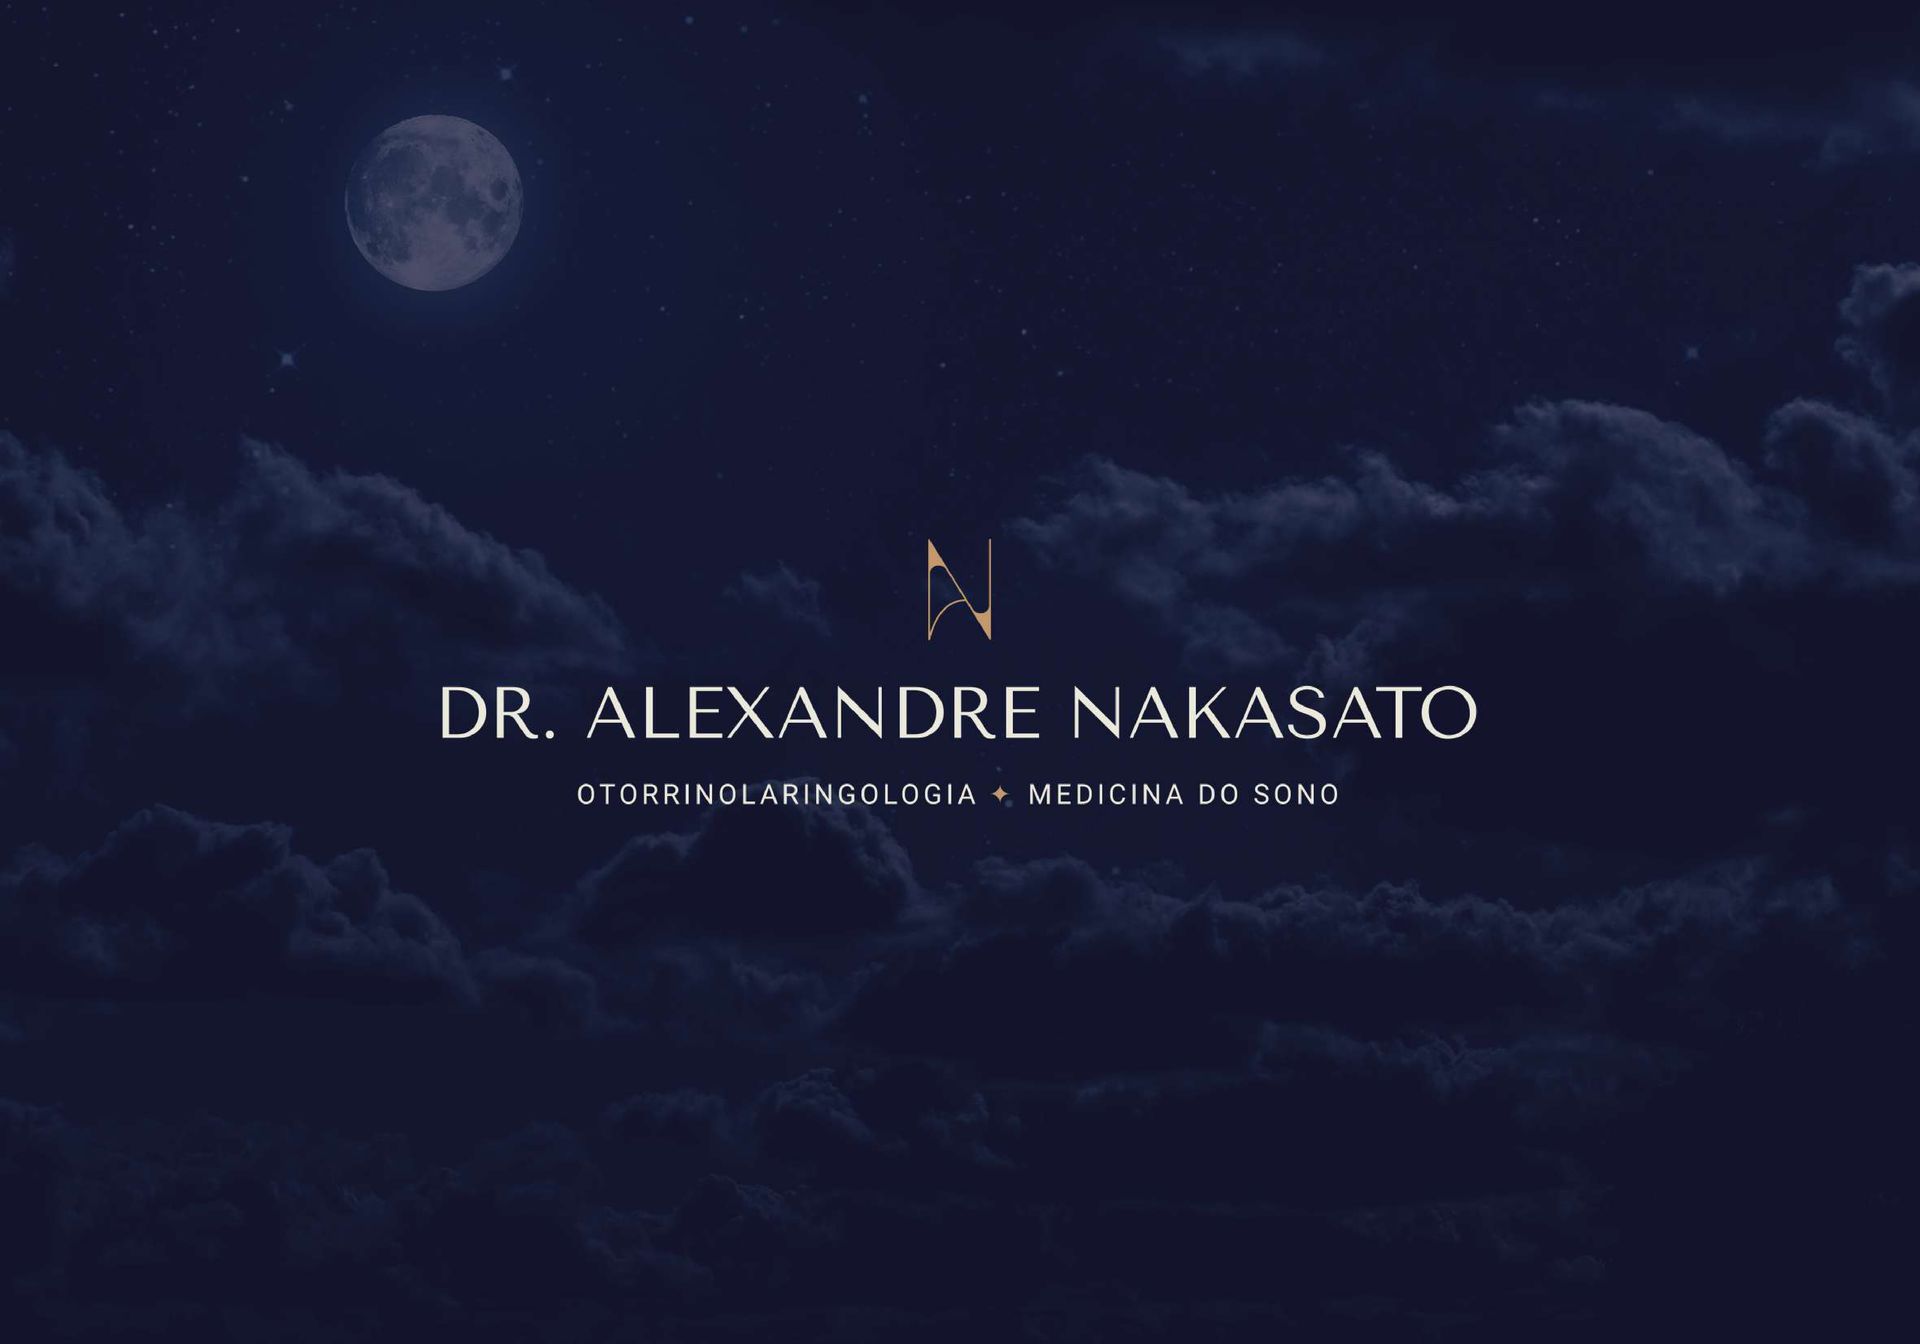 Alexandre Nakasato - Identidade Visual e Criação de Website